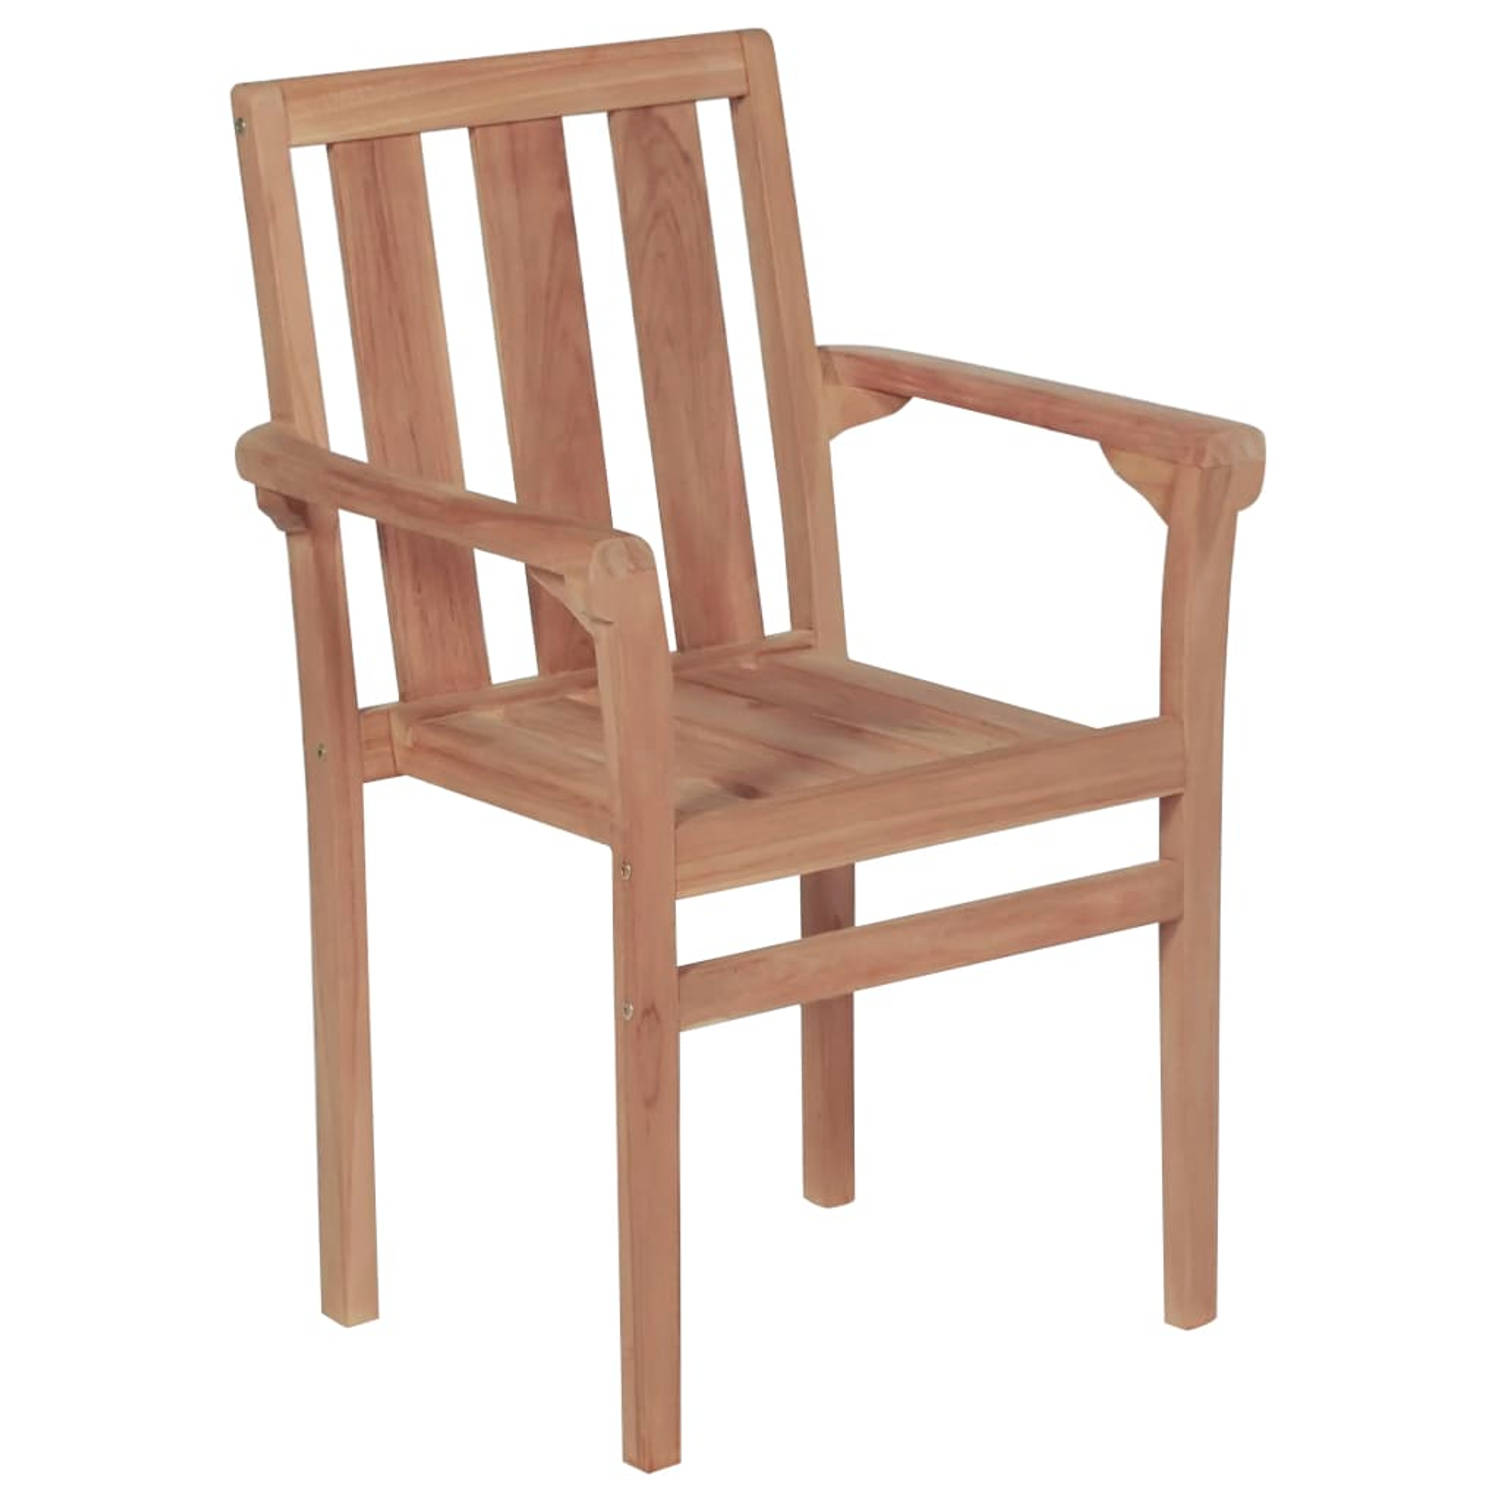 The Living Store Tuinstoelenset - Teakhout - Stapelbaar - 58x50x89 cm - 8x stoel